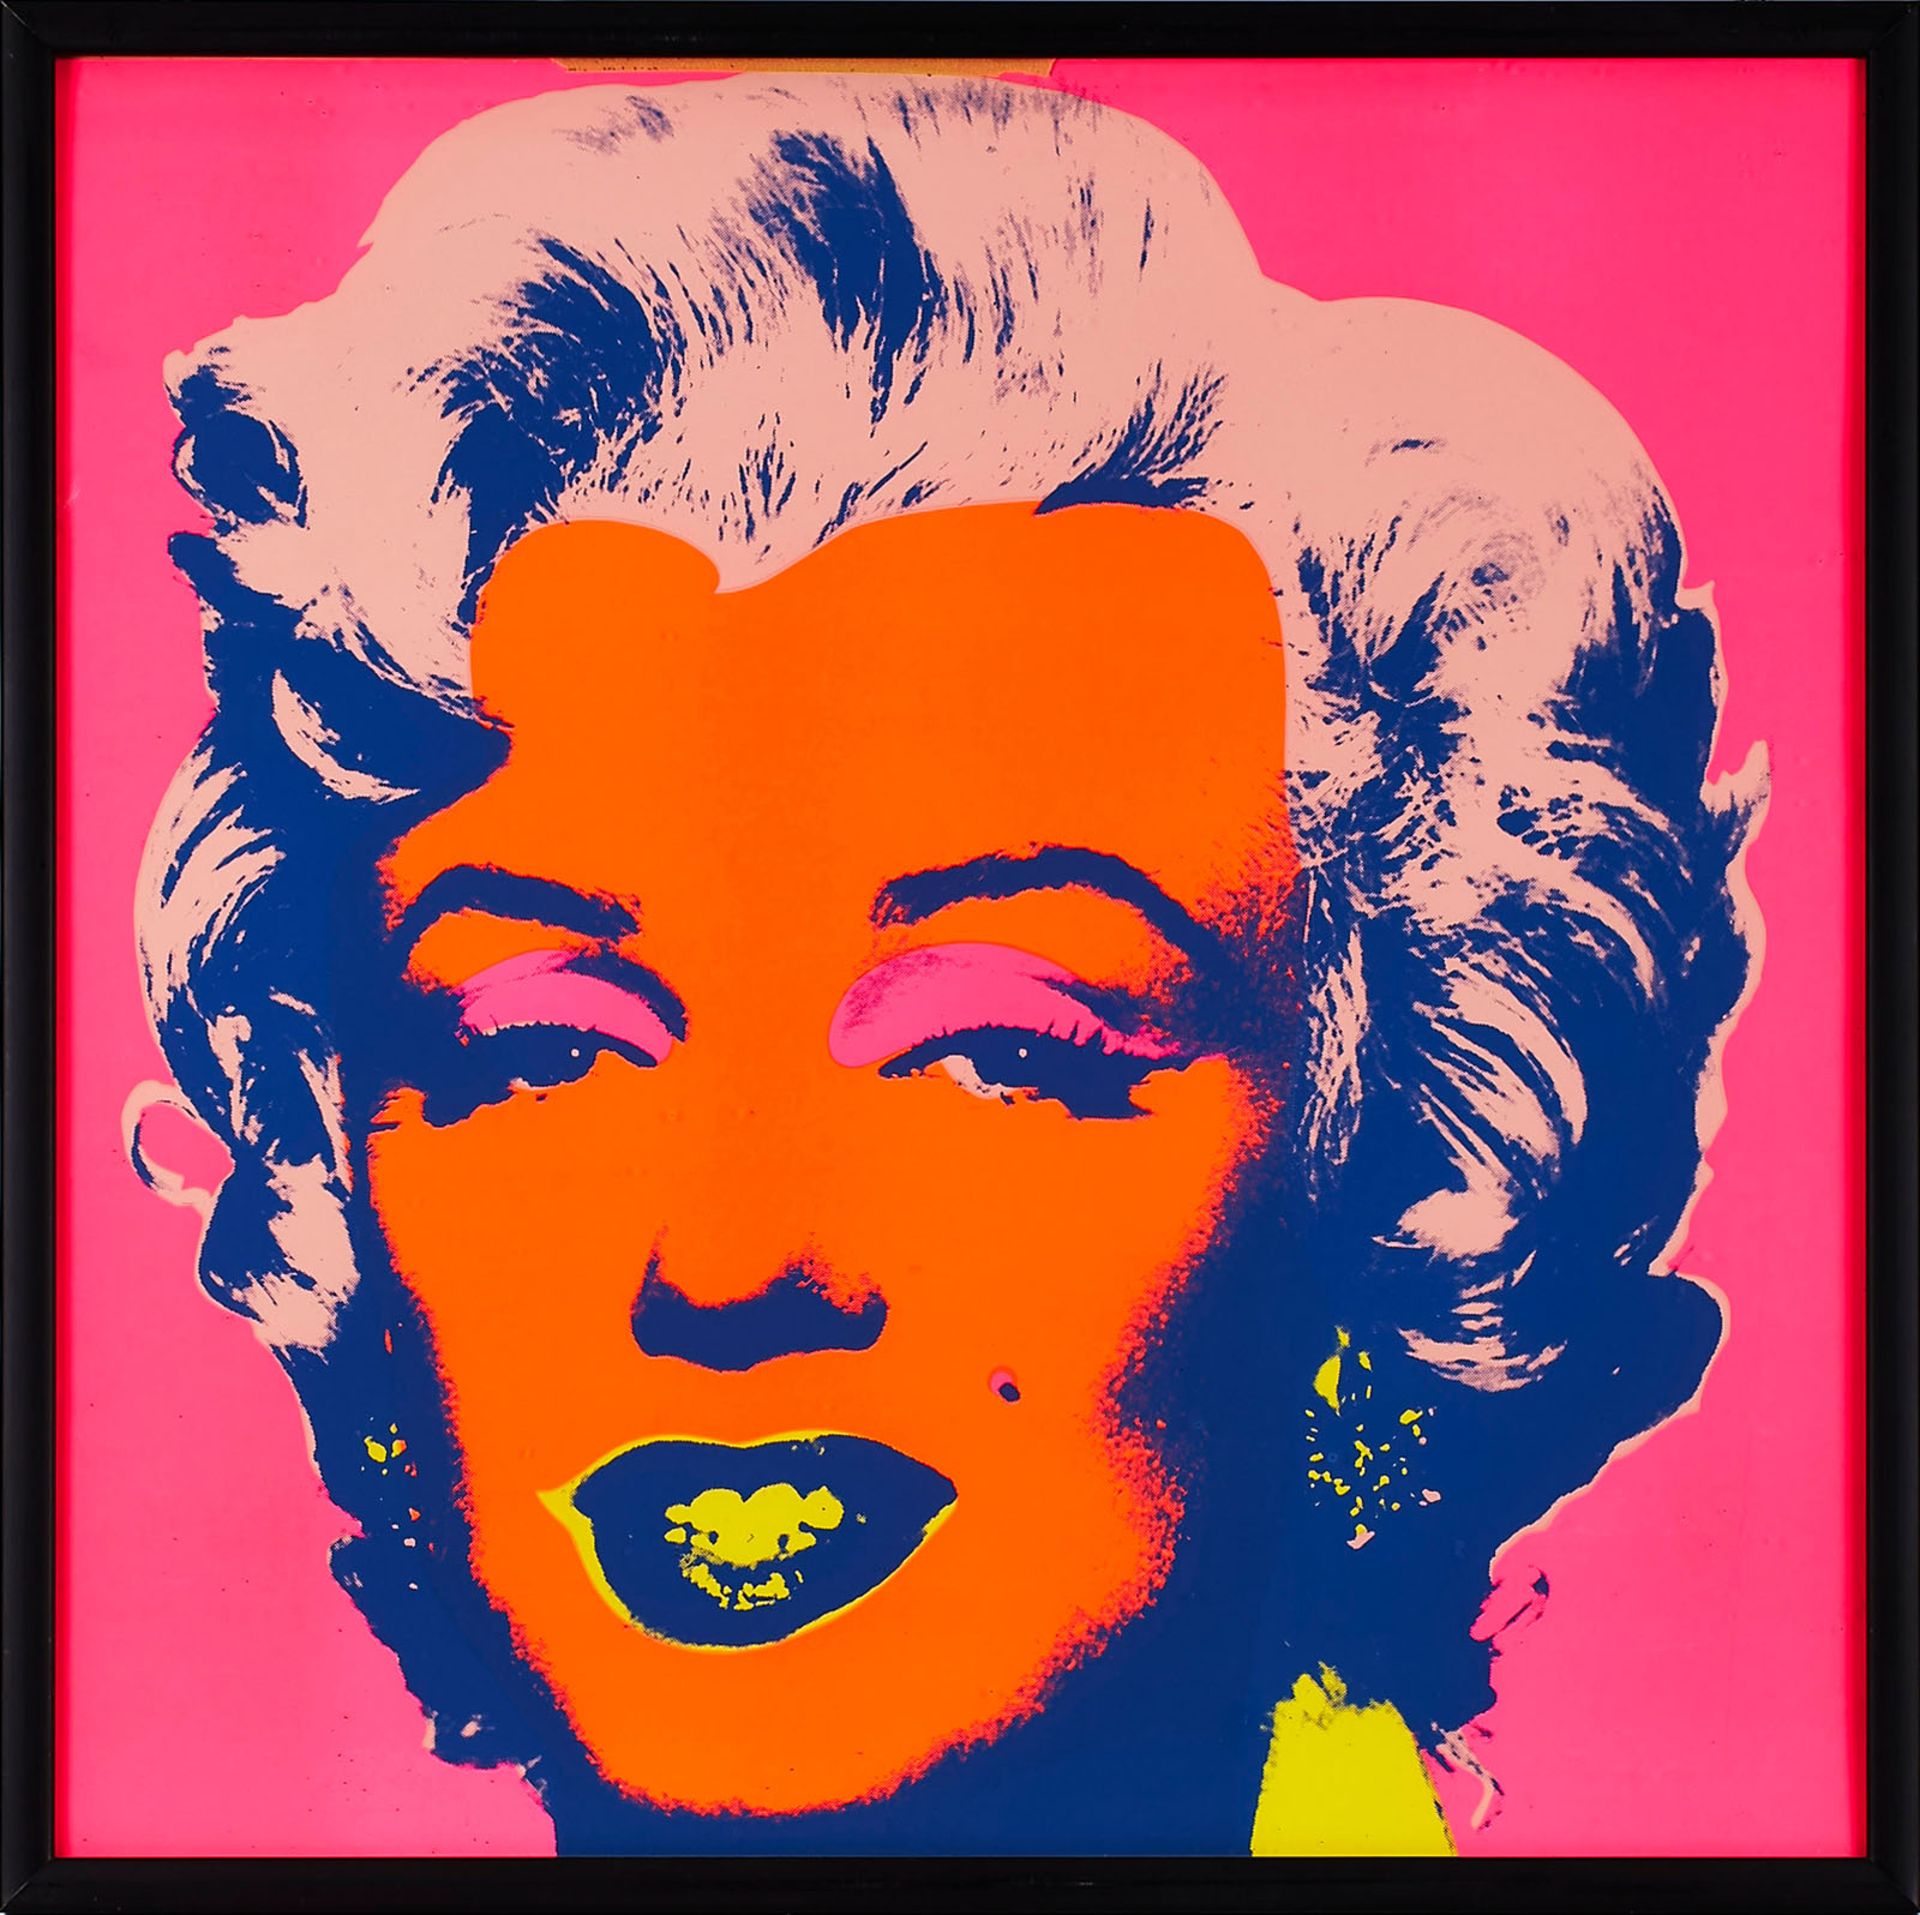 Siebdruck nach Andy Warhol "Marilyn